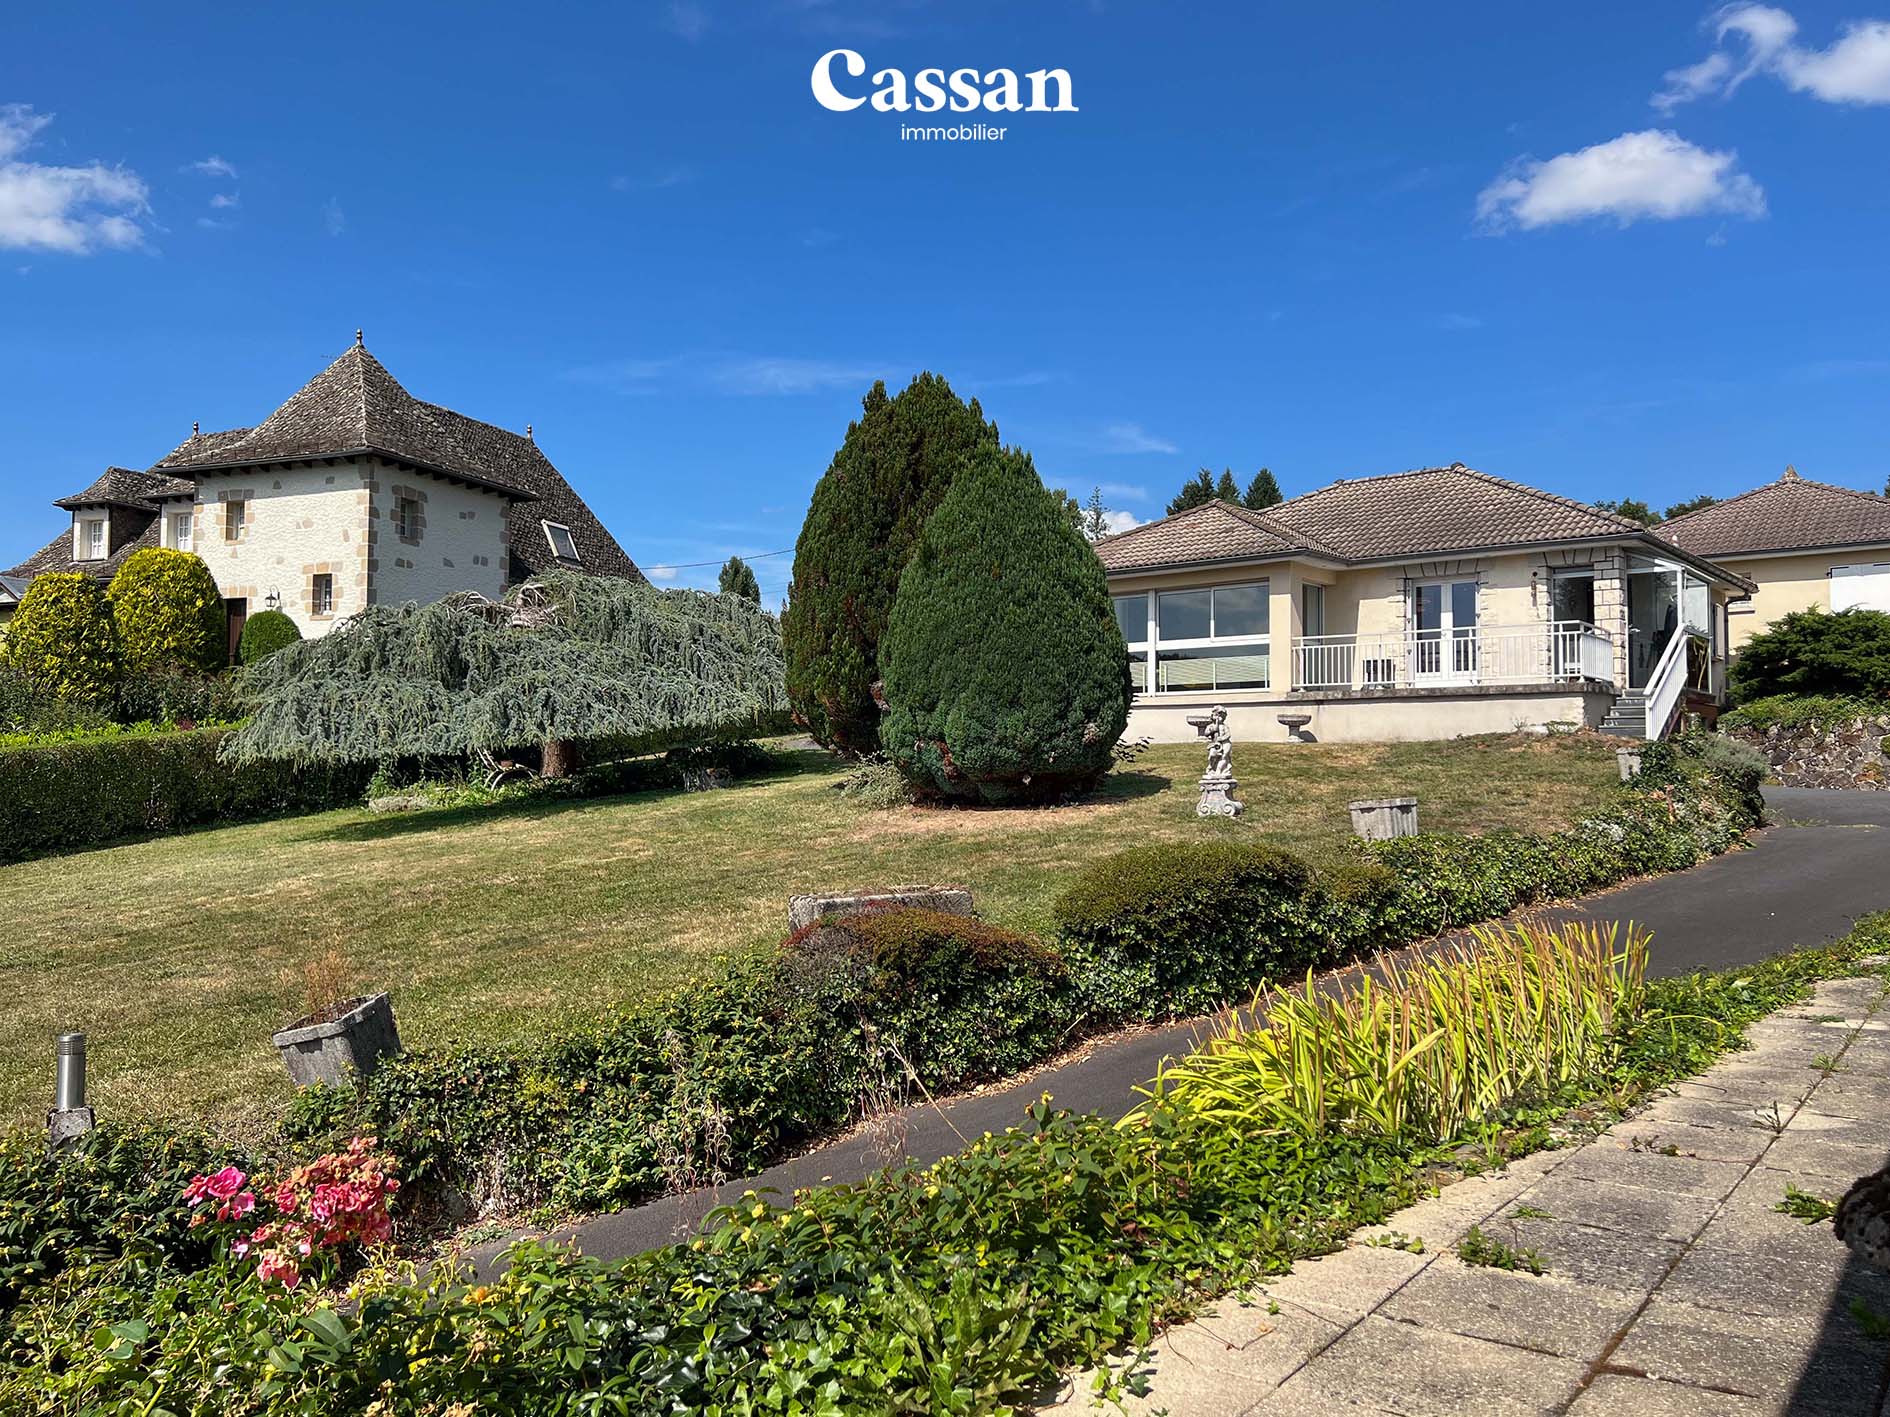 Maison à vendre Sansac-de-Marmiesse Cassan immobilier